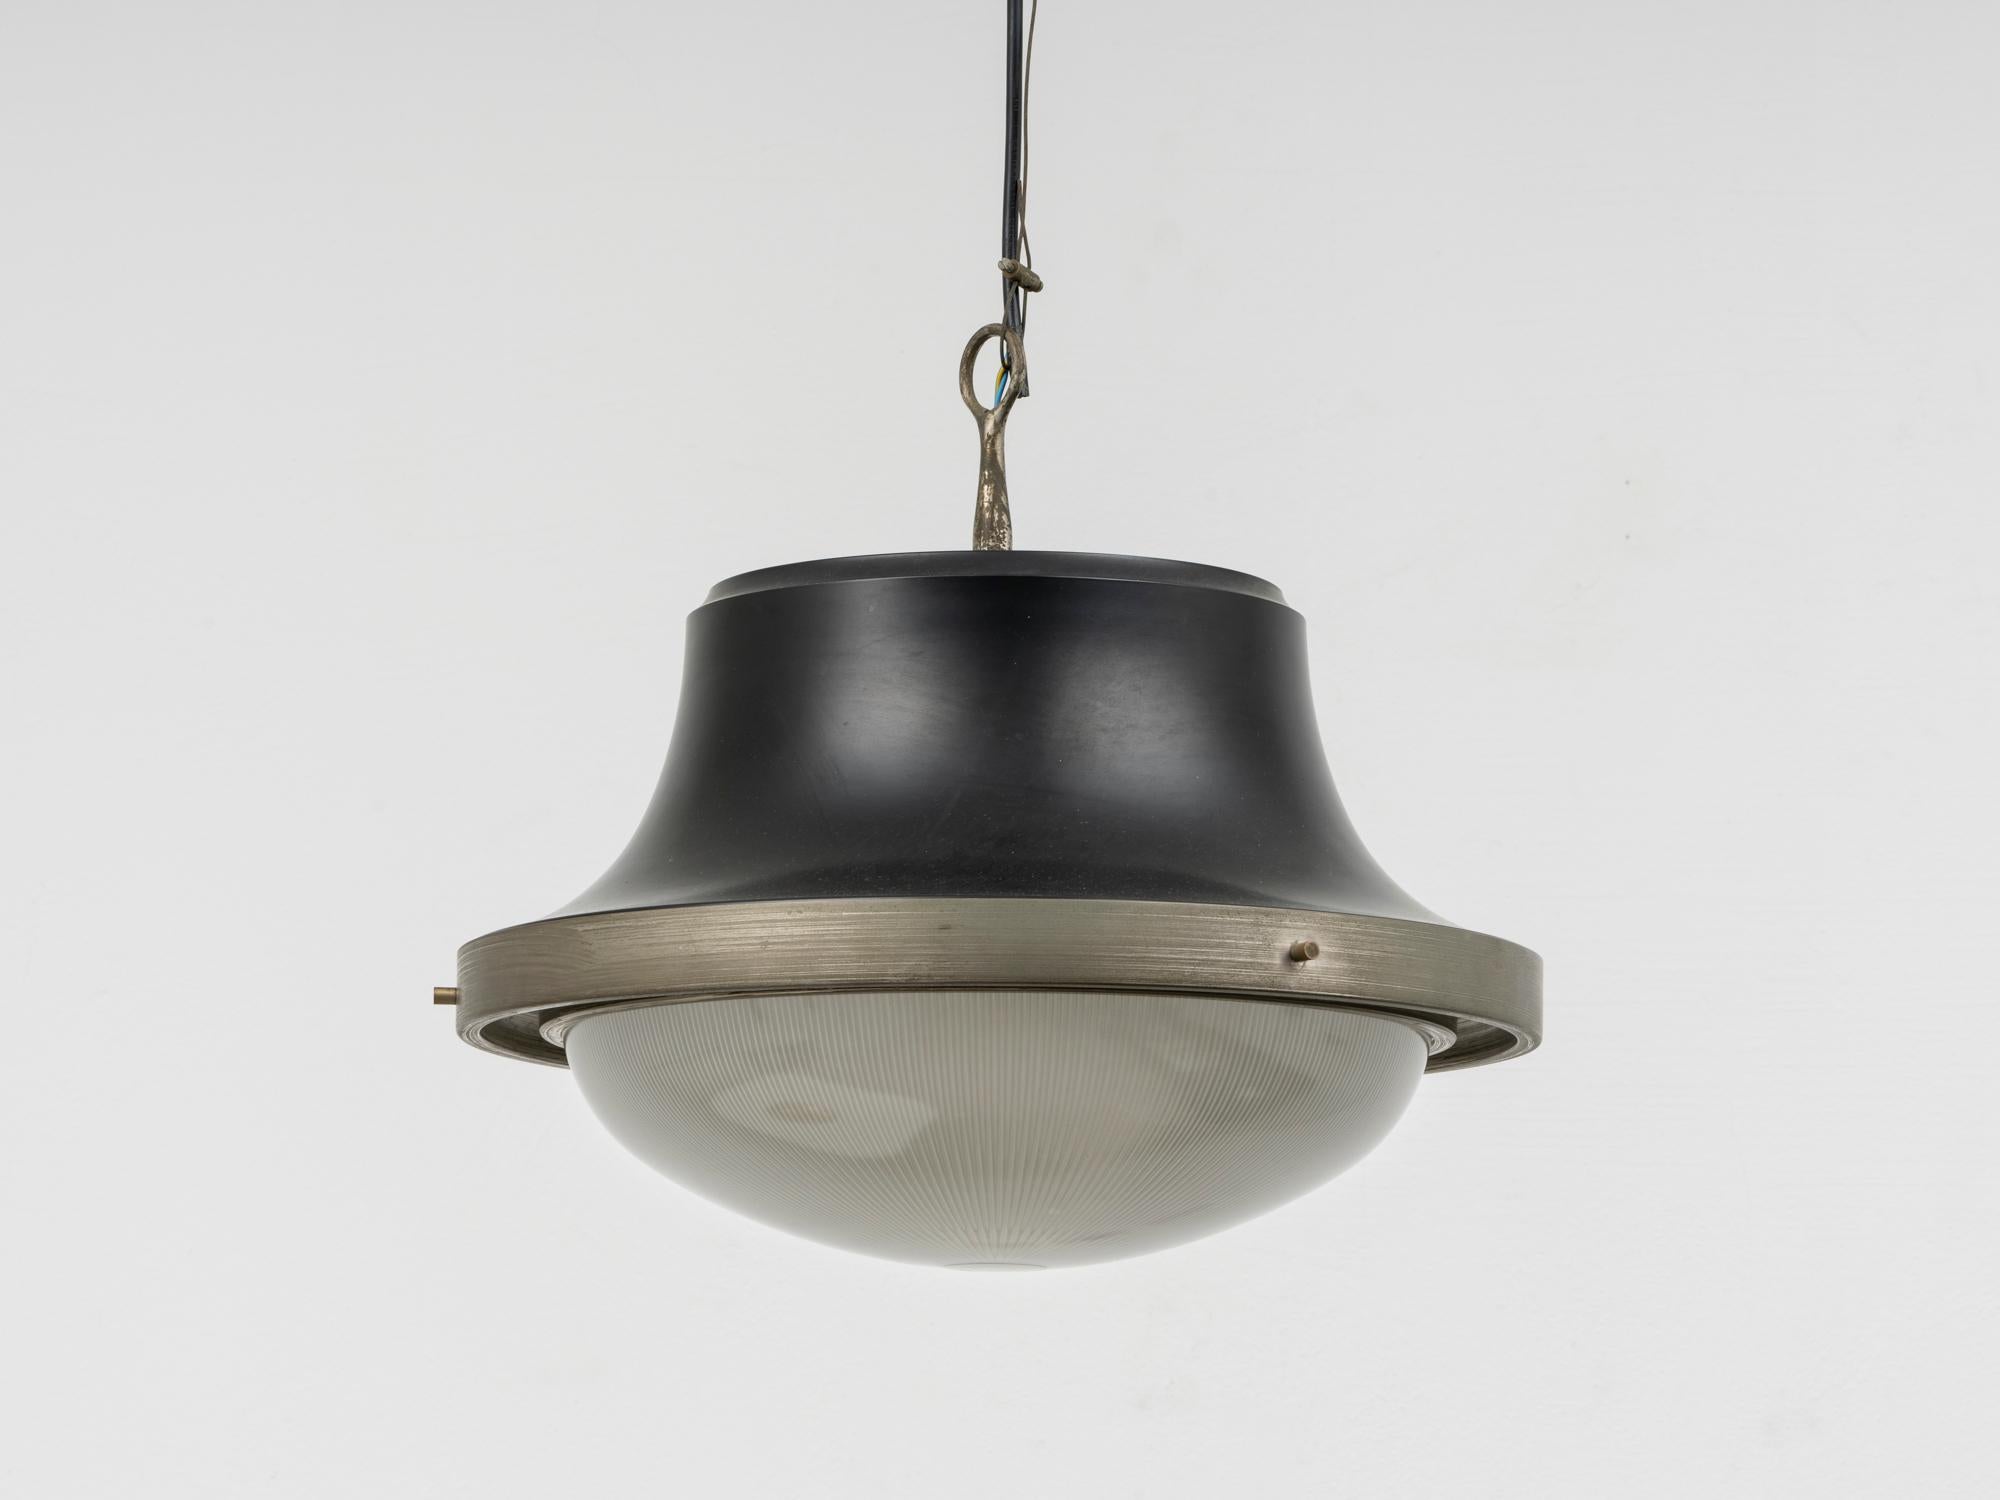 Cette lampe suspendue a été conçue par Sergio Mazza en 1960 et produite par Artemide, la société qu'il avait fondée avec Ernesto Gismondi en 1959. Cette lampe, connue sous le nom de  